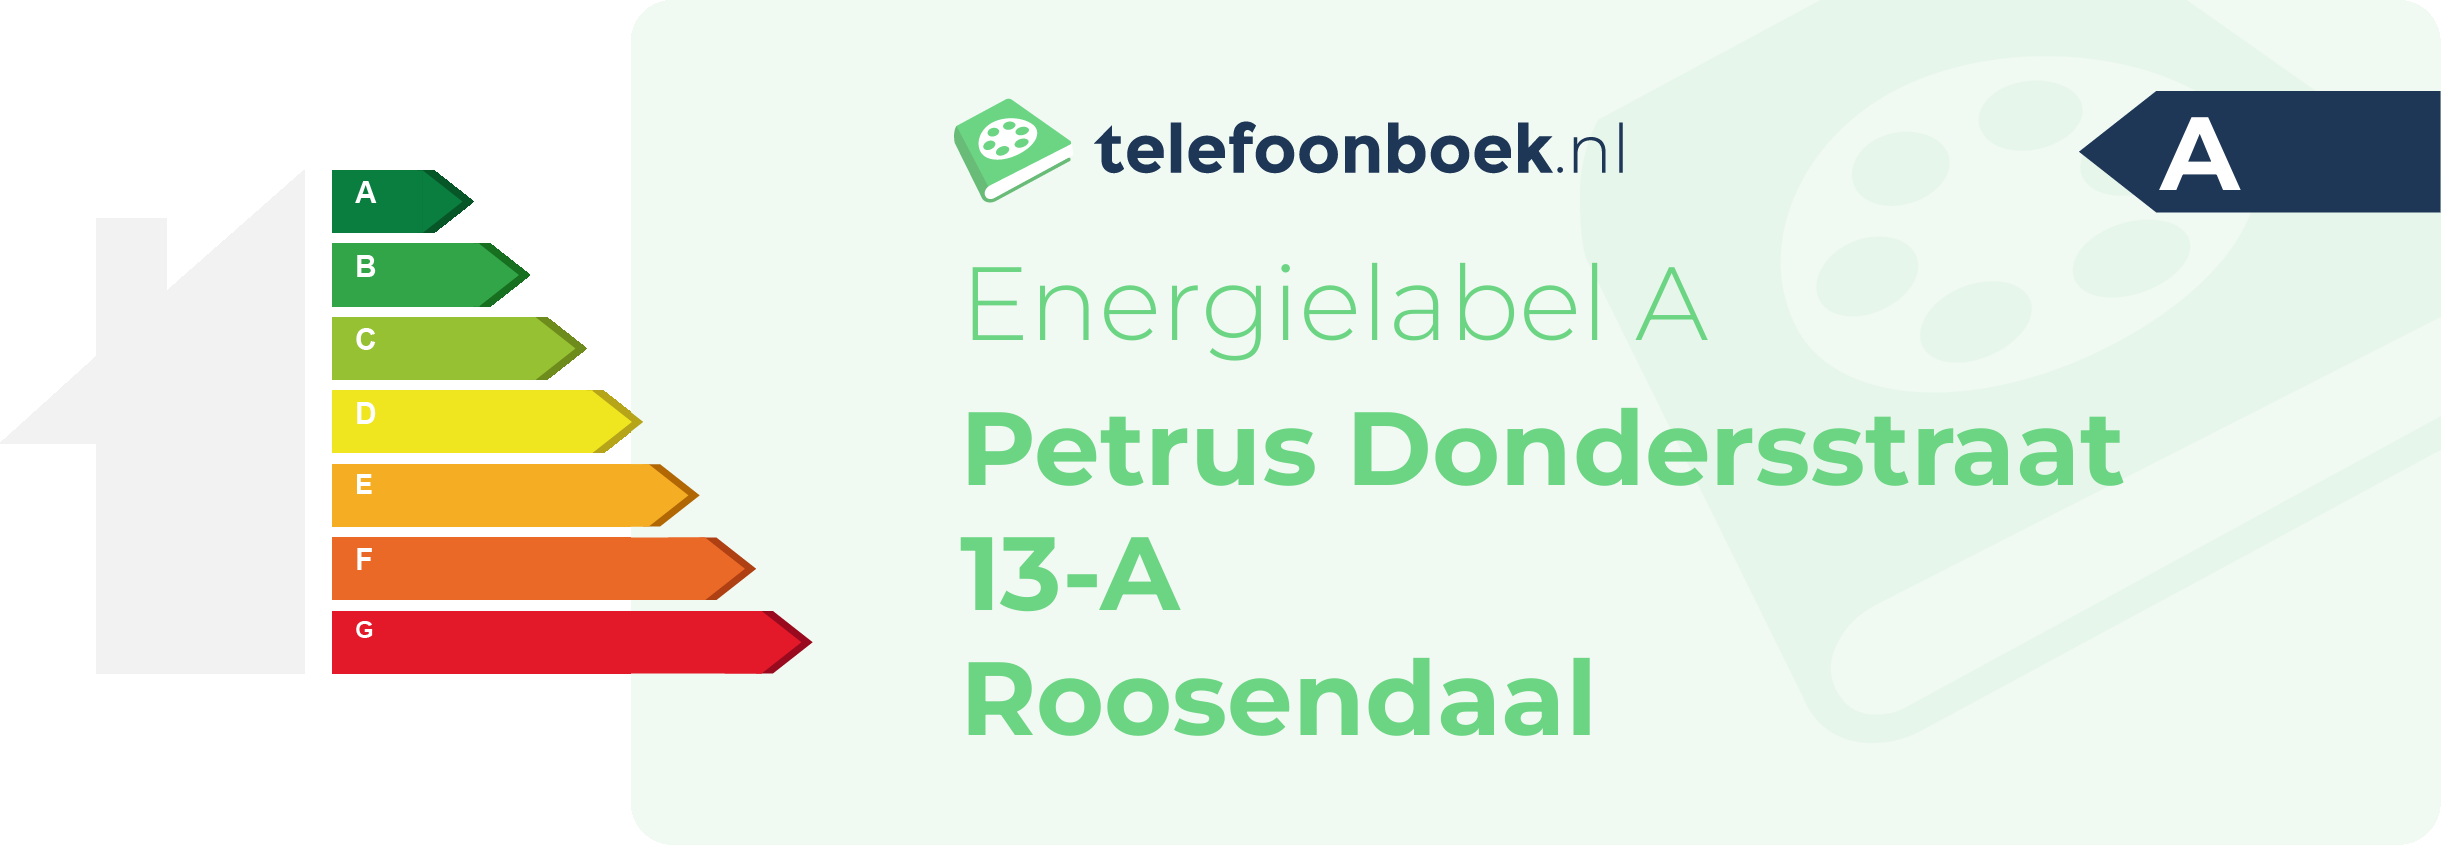 Energielabel Petrus Dondersstraat 13-A Roosendaal